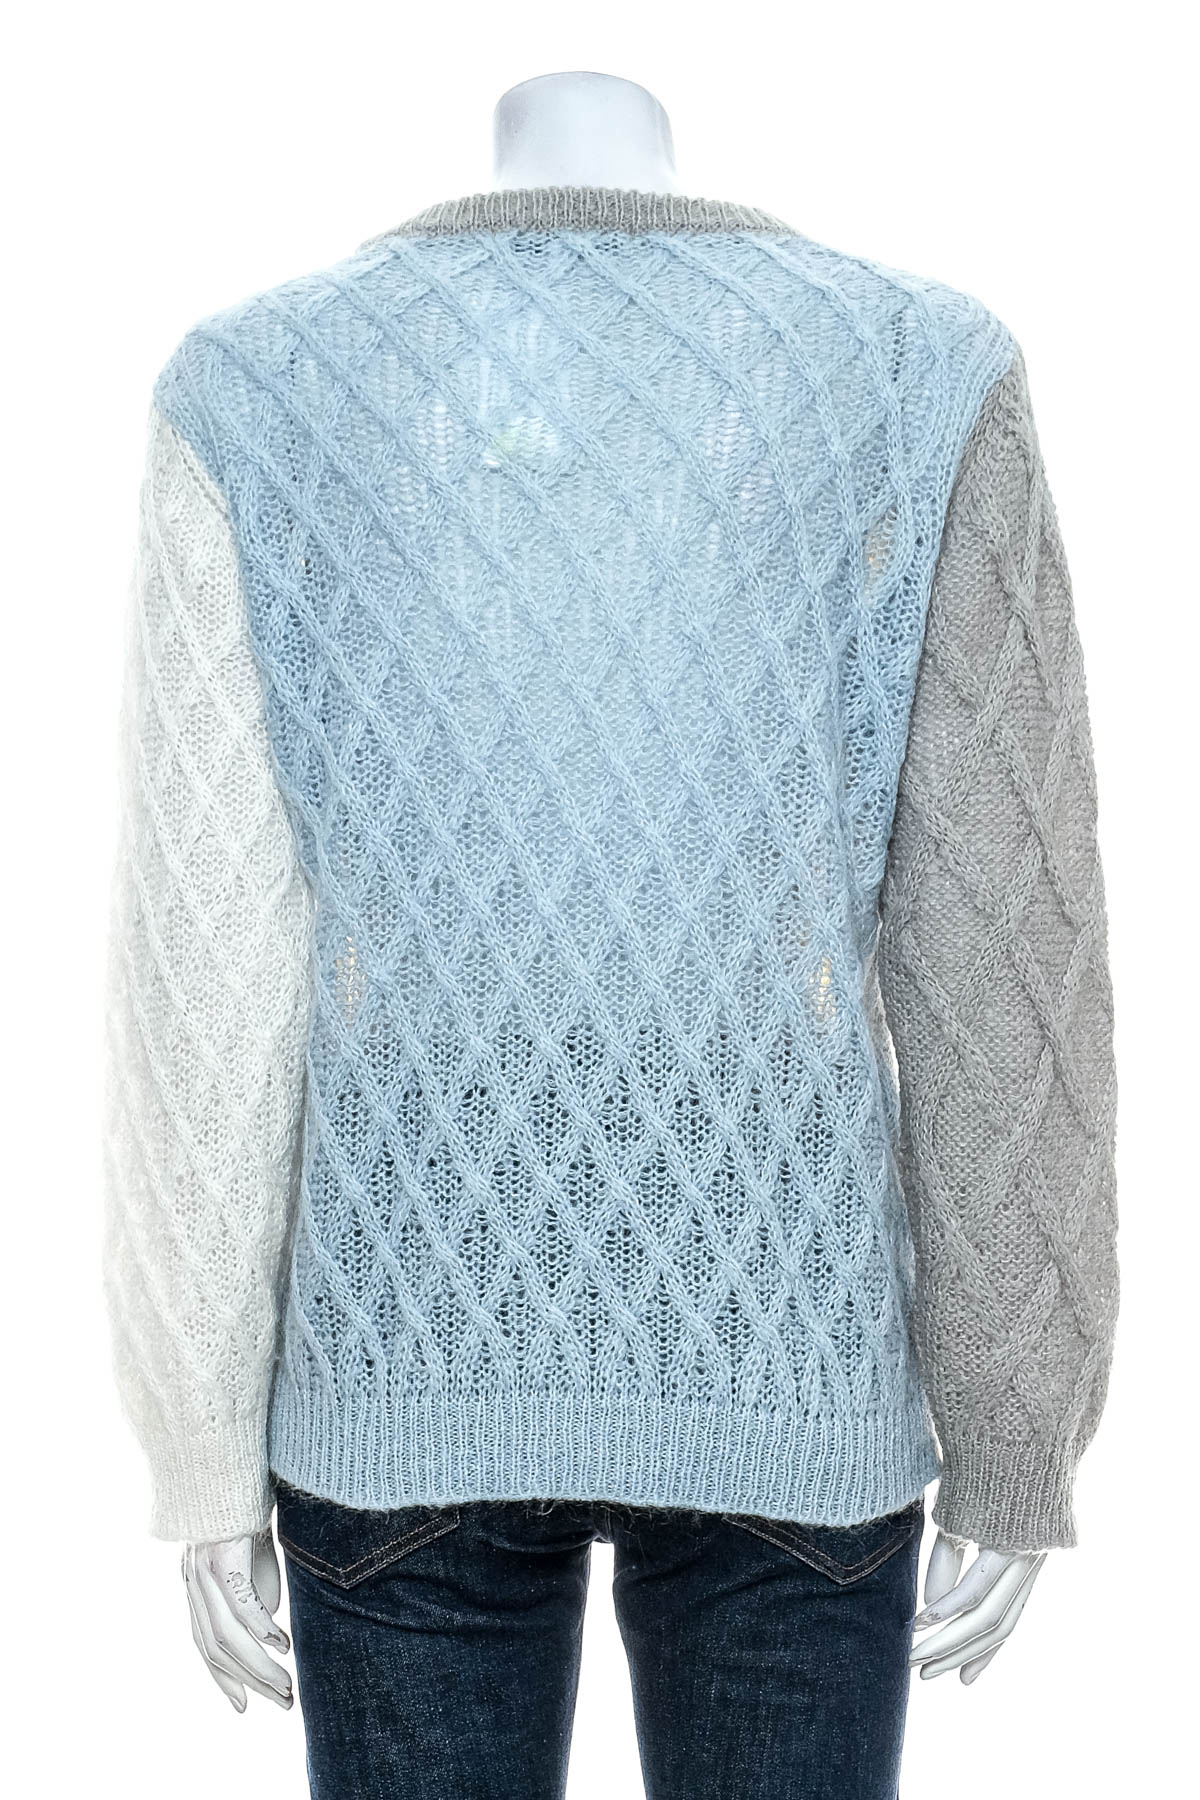 Women's sweater - Xandres - 1